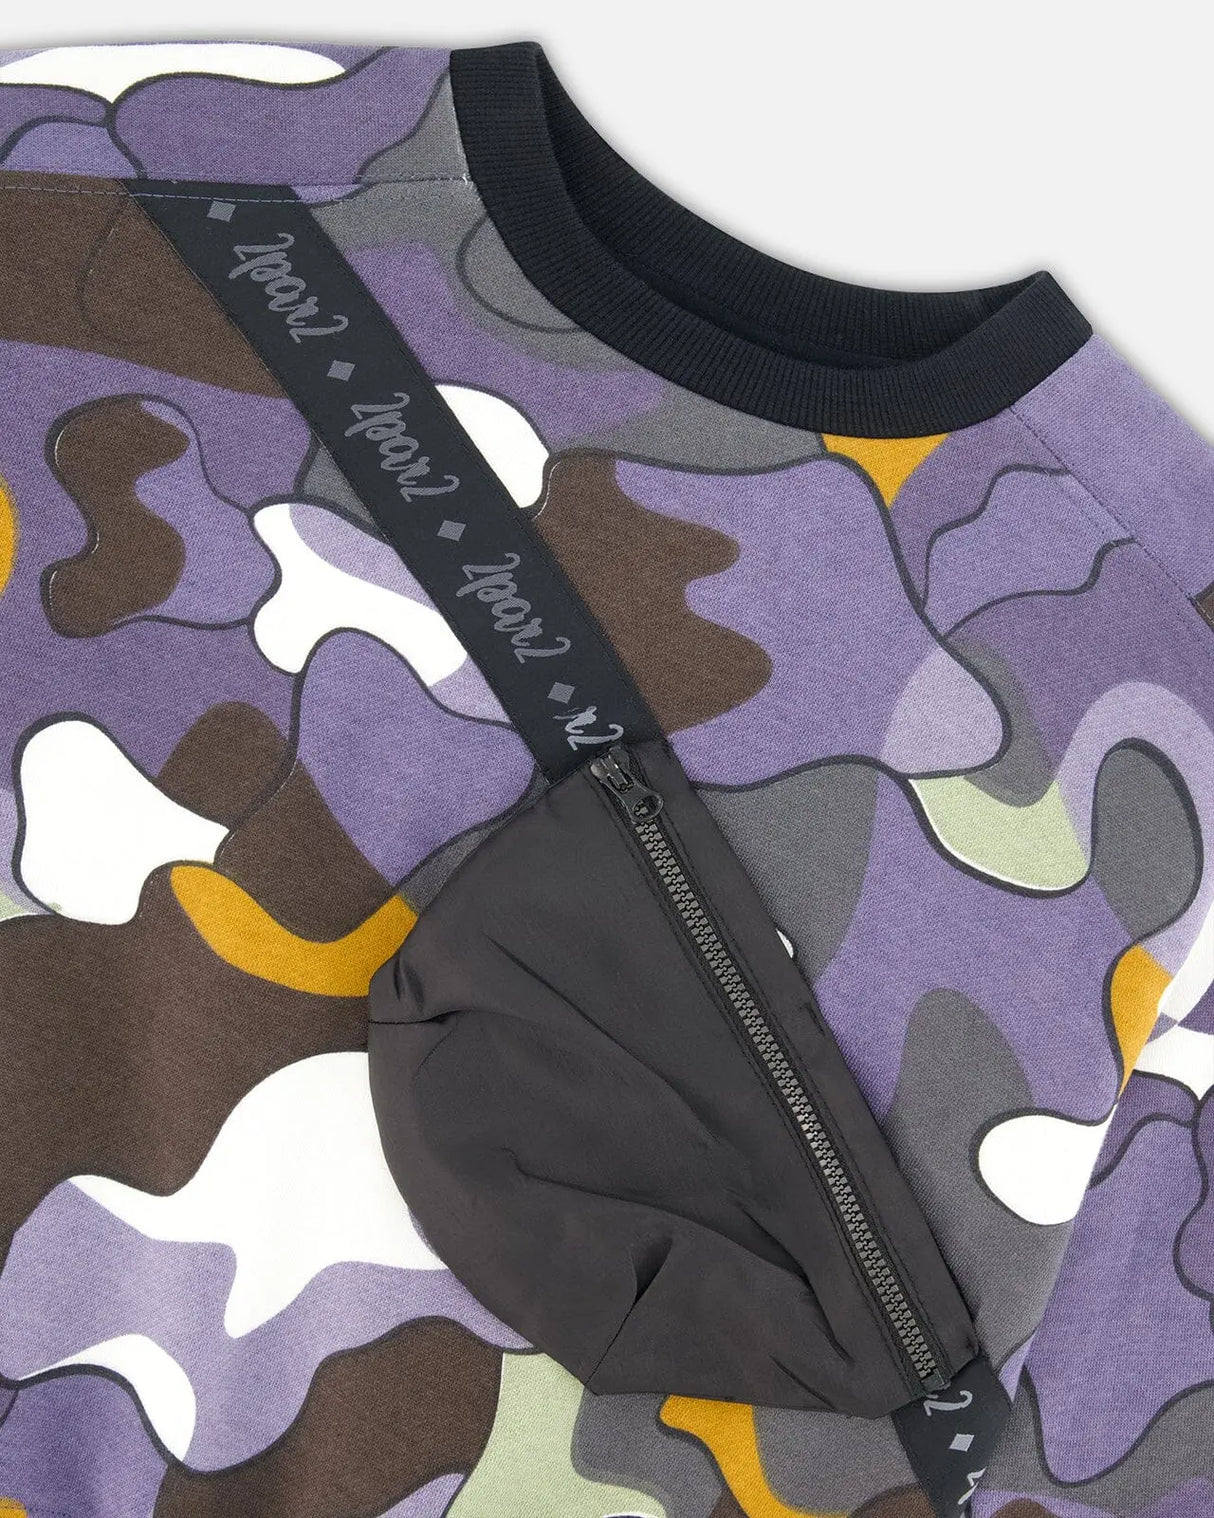 Printed Camo Fleece Sweatshirt With Bag | Deux par Deux | Jenni Kidz